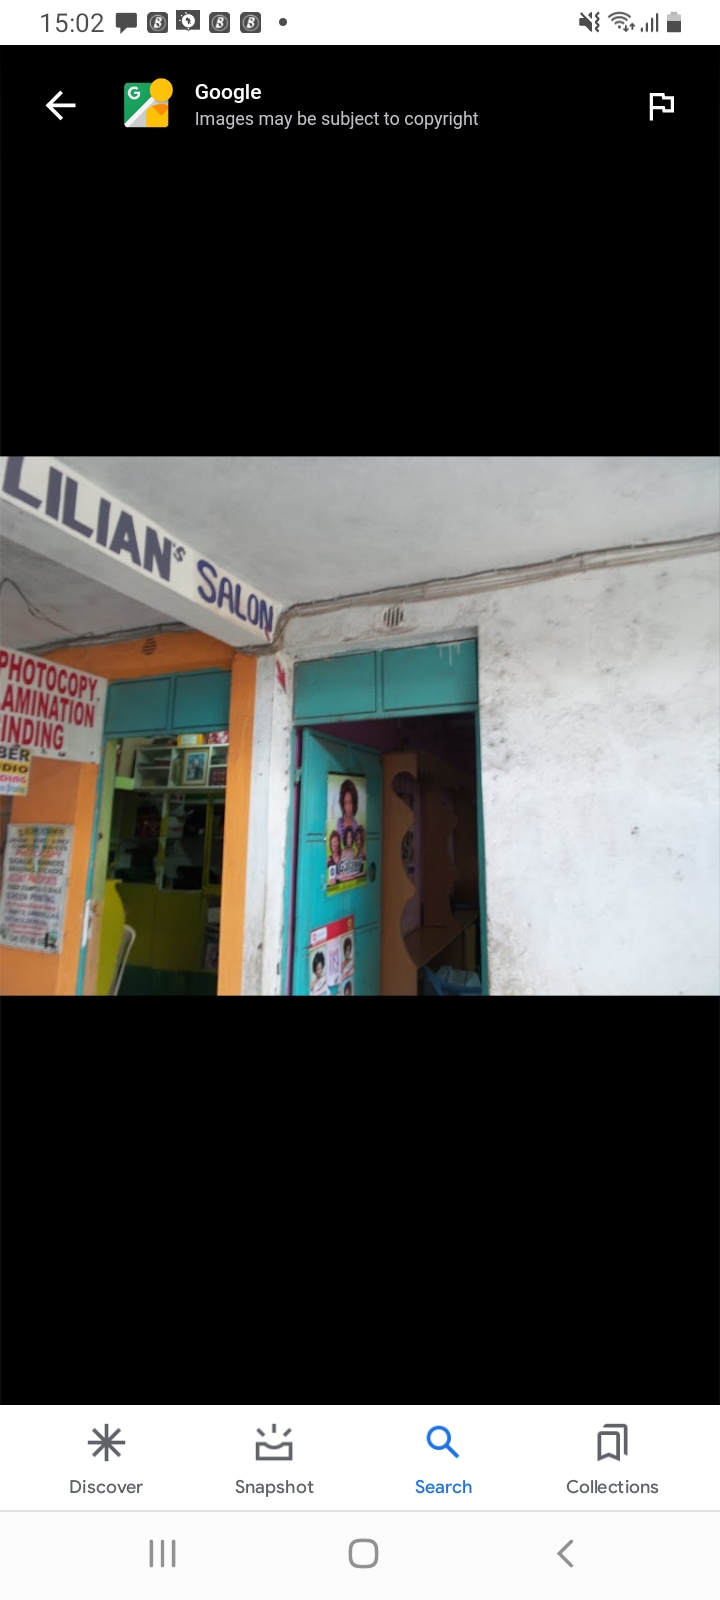 Lilian's